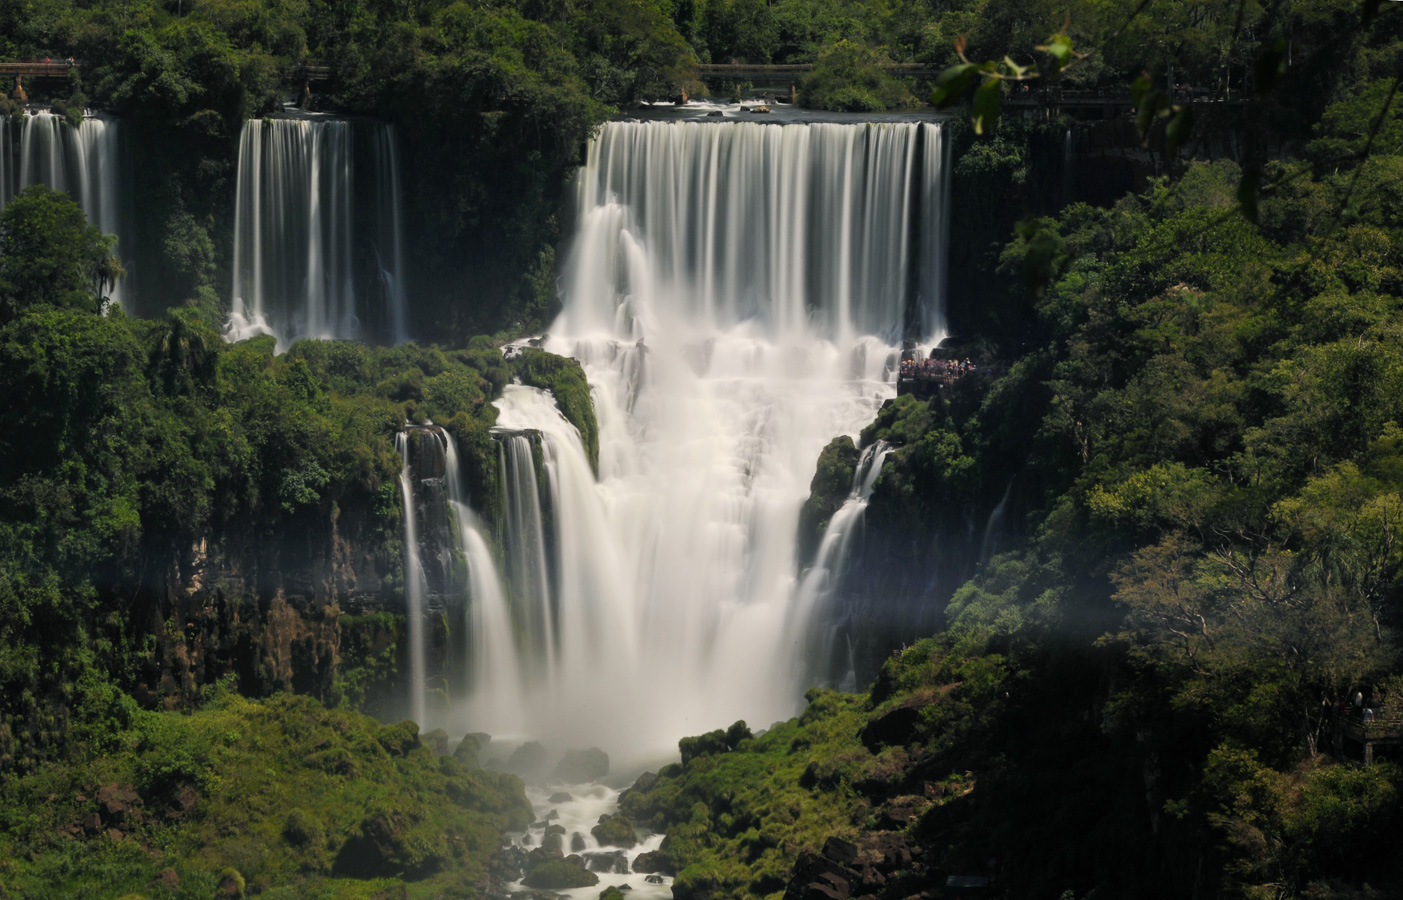 Cataratas del Iguazu [160 mm, 5.0 sec at f / 22, ISO 400]